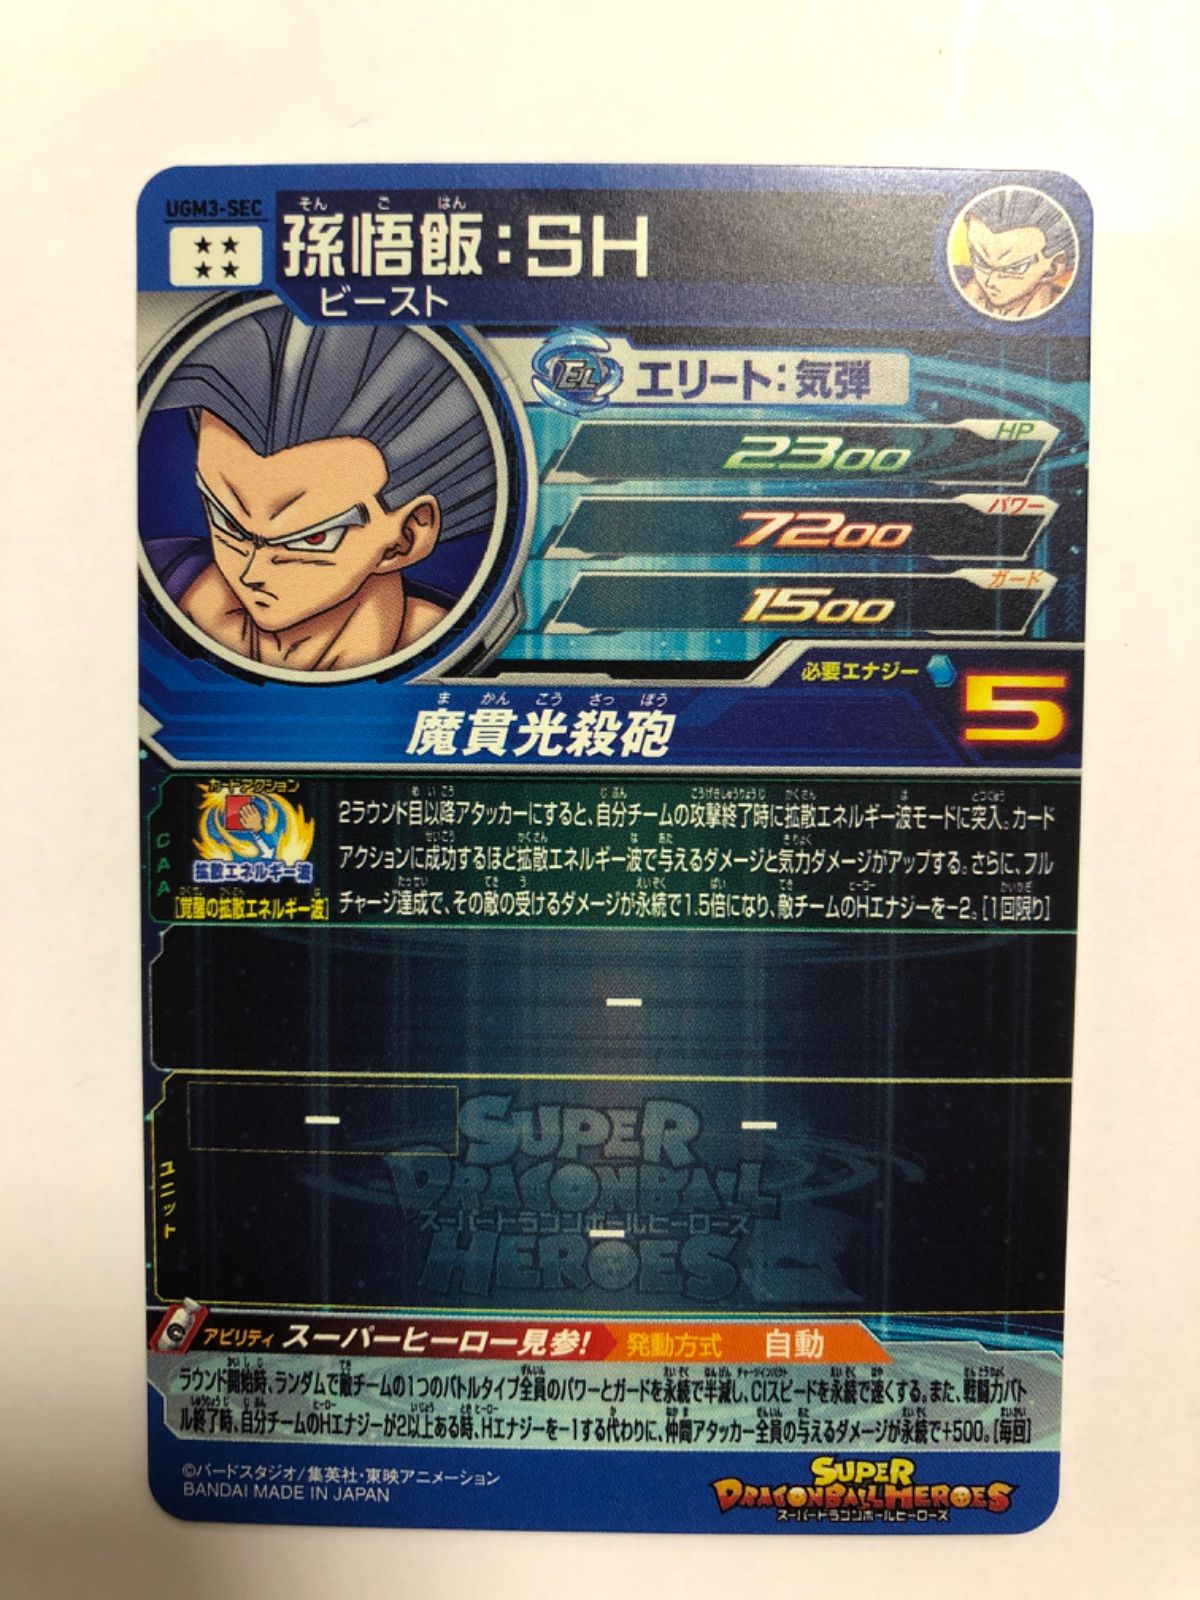 【美品】UGM3-SEC 孫悟飯:SH スーパードラゴンボールヒーローズ